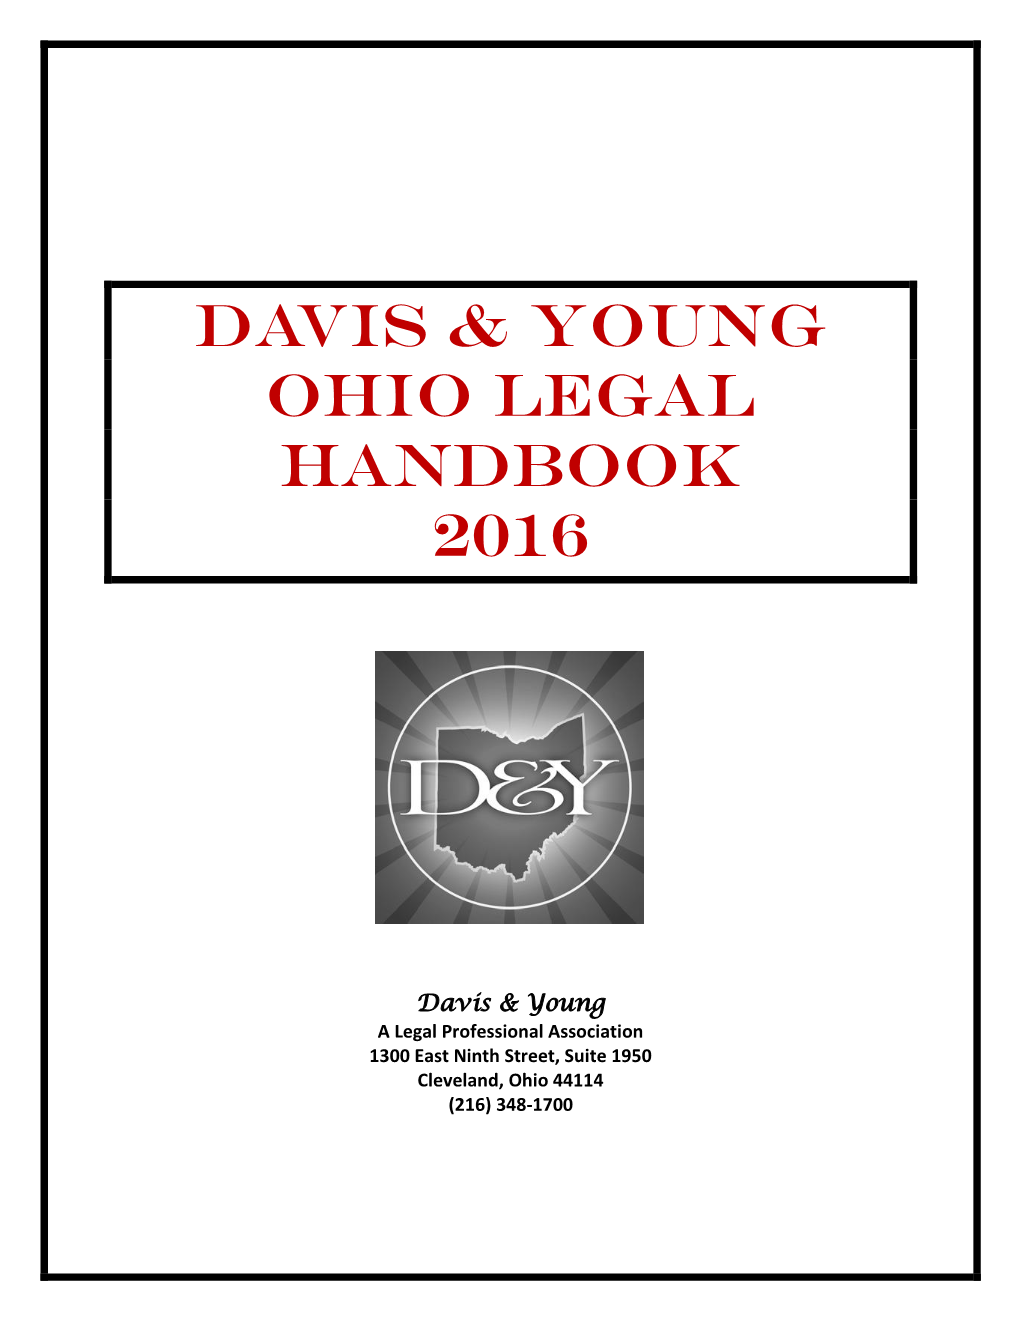 Davis & Young Ohio Legal Handbook 2016